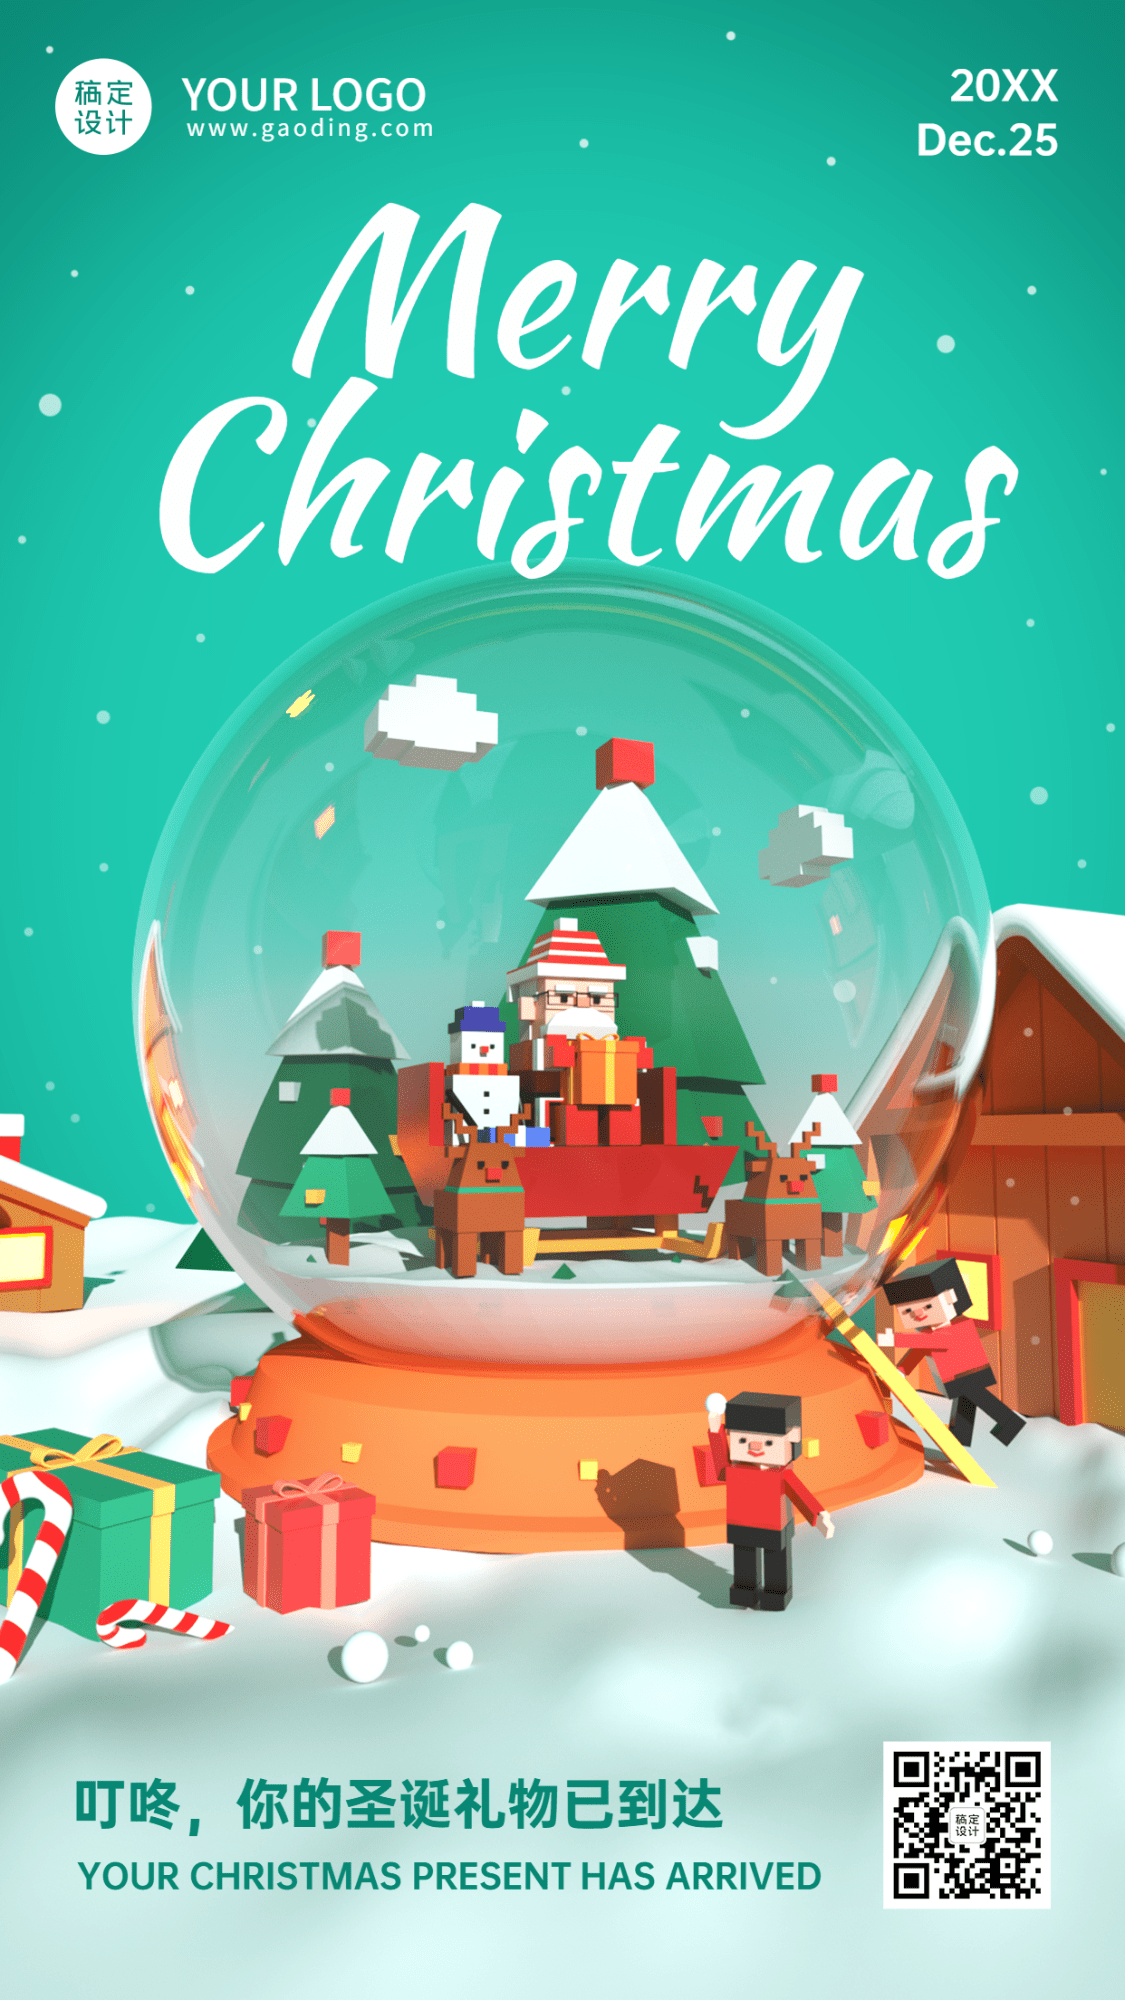 圣诞节祝福水晶球3D创意竖版海报 